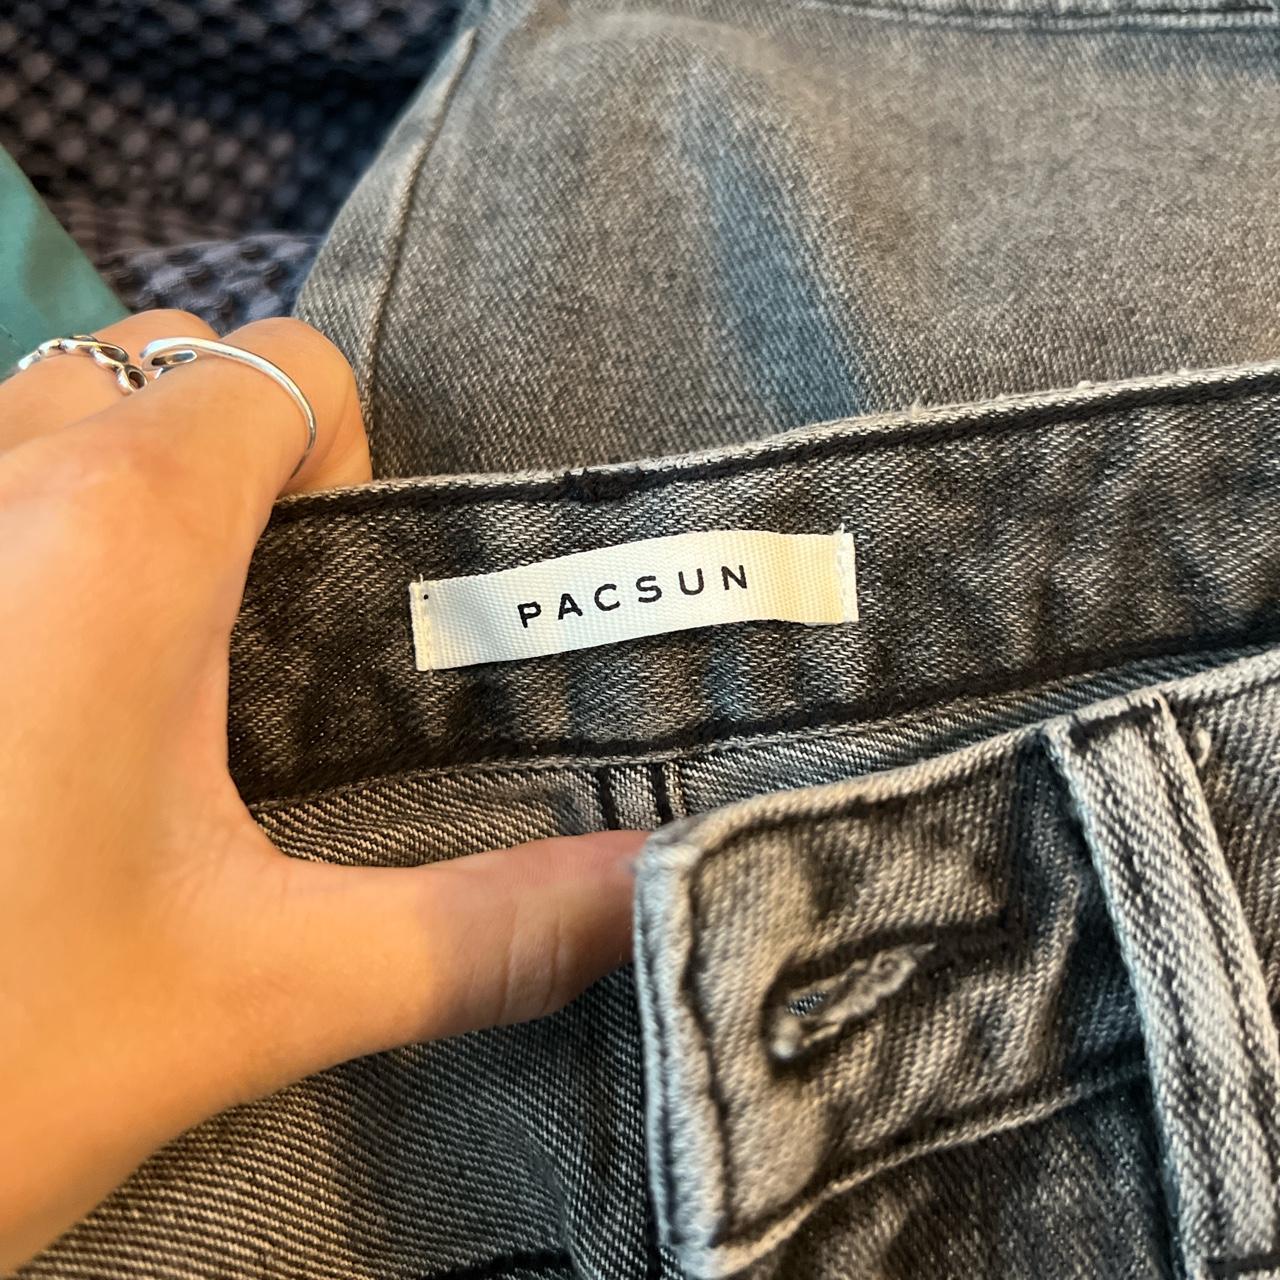 Pacsun 90’s Boyfriend jeans// size: 24//... - Depop